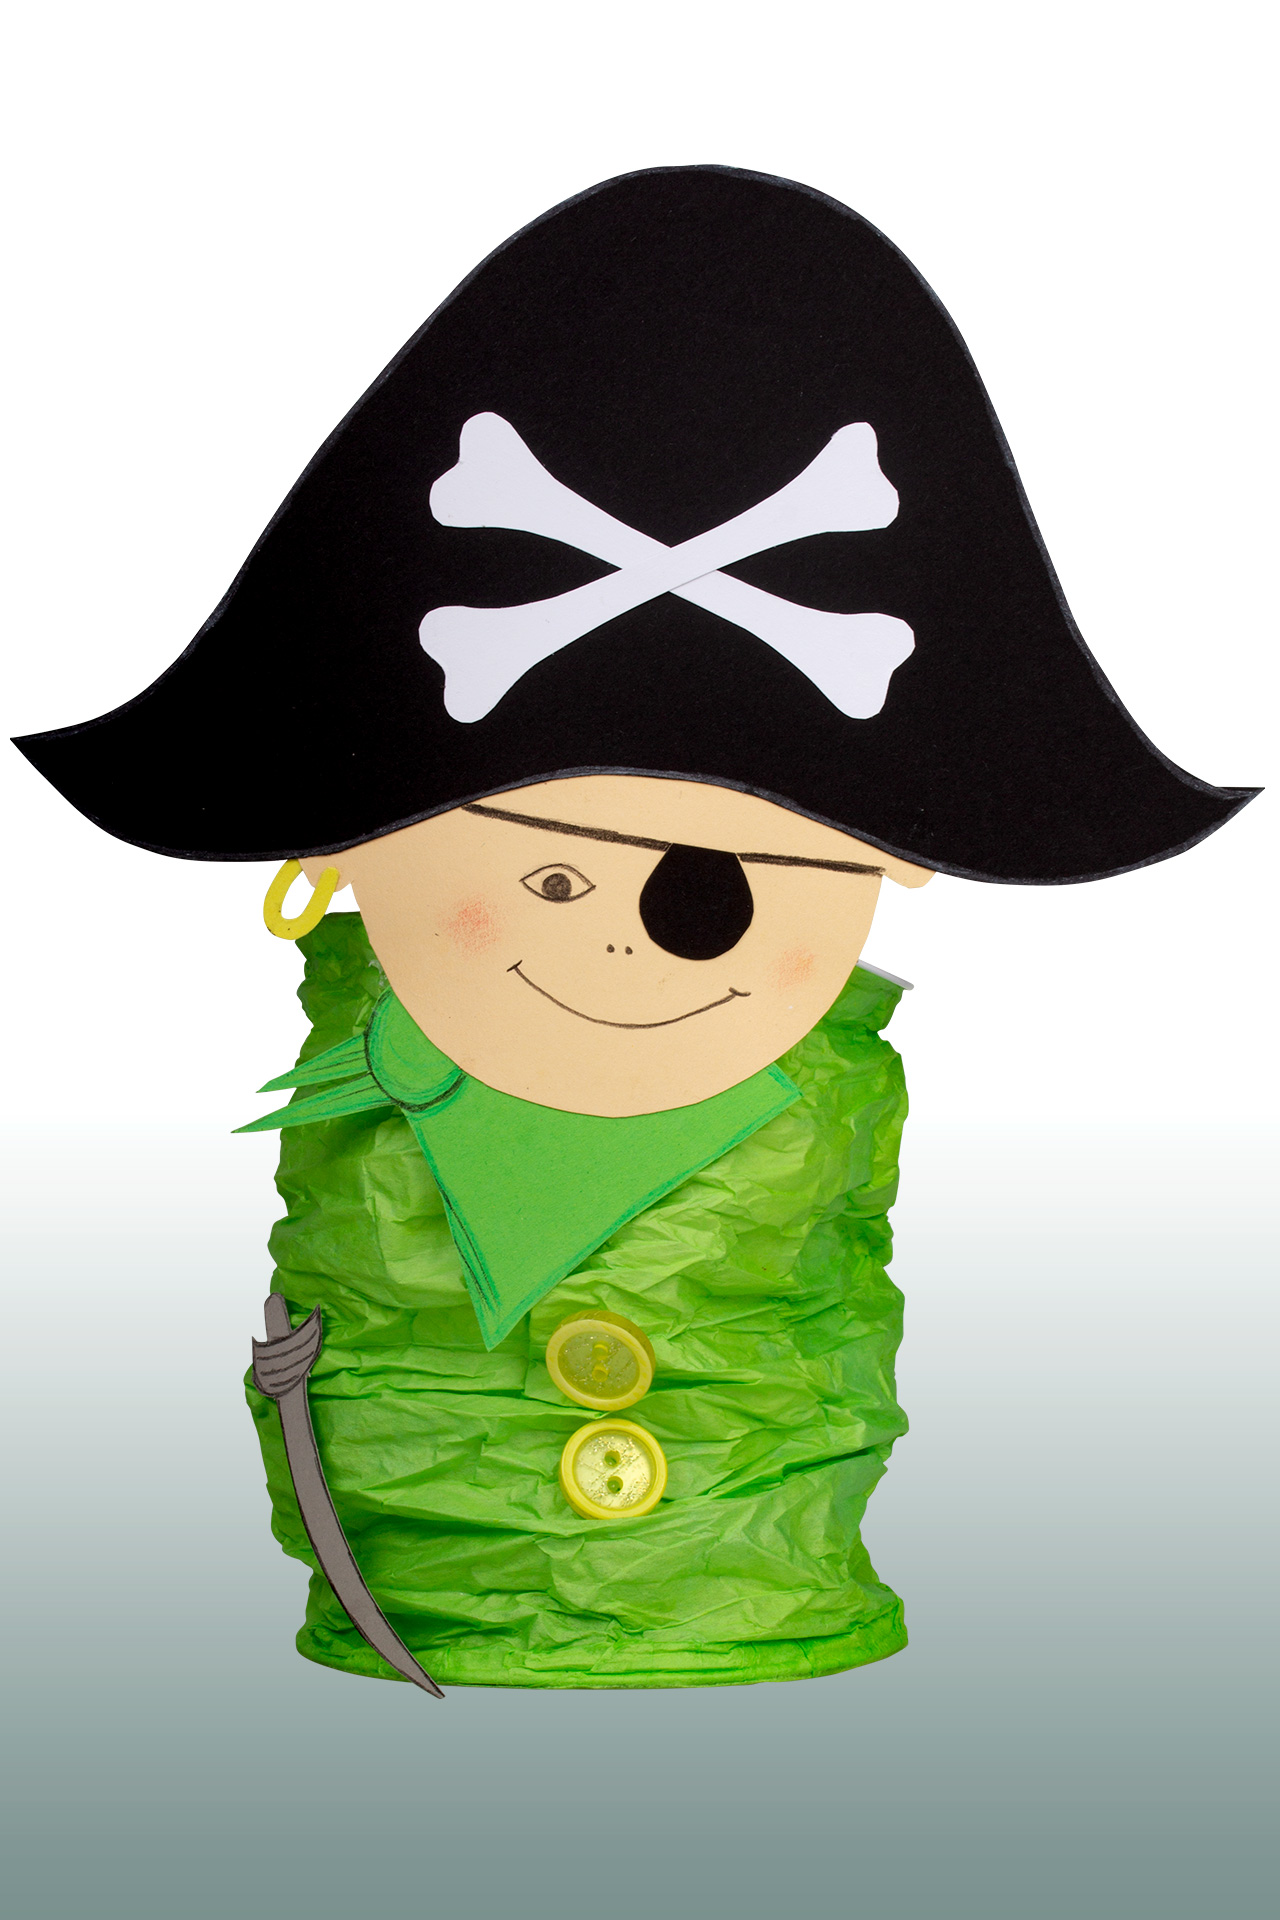 <p>Der fröhliche Pirat setzt sich aus Kopf, Haaren, Piratenhut mit Knochen, Halstuch, Augenklappe und Säbel zusammen.</p><p>